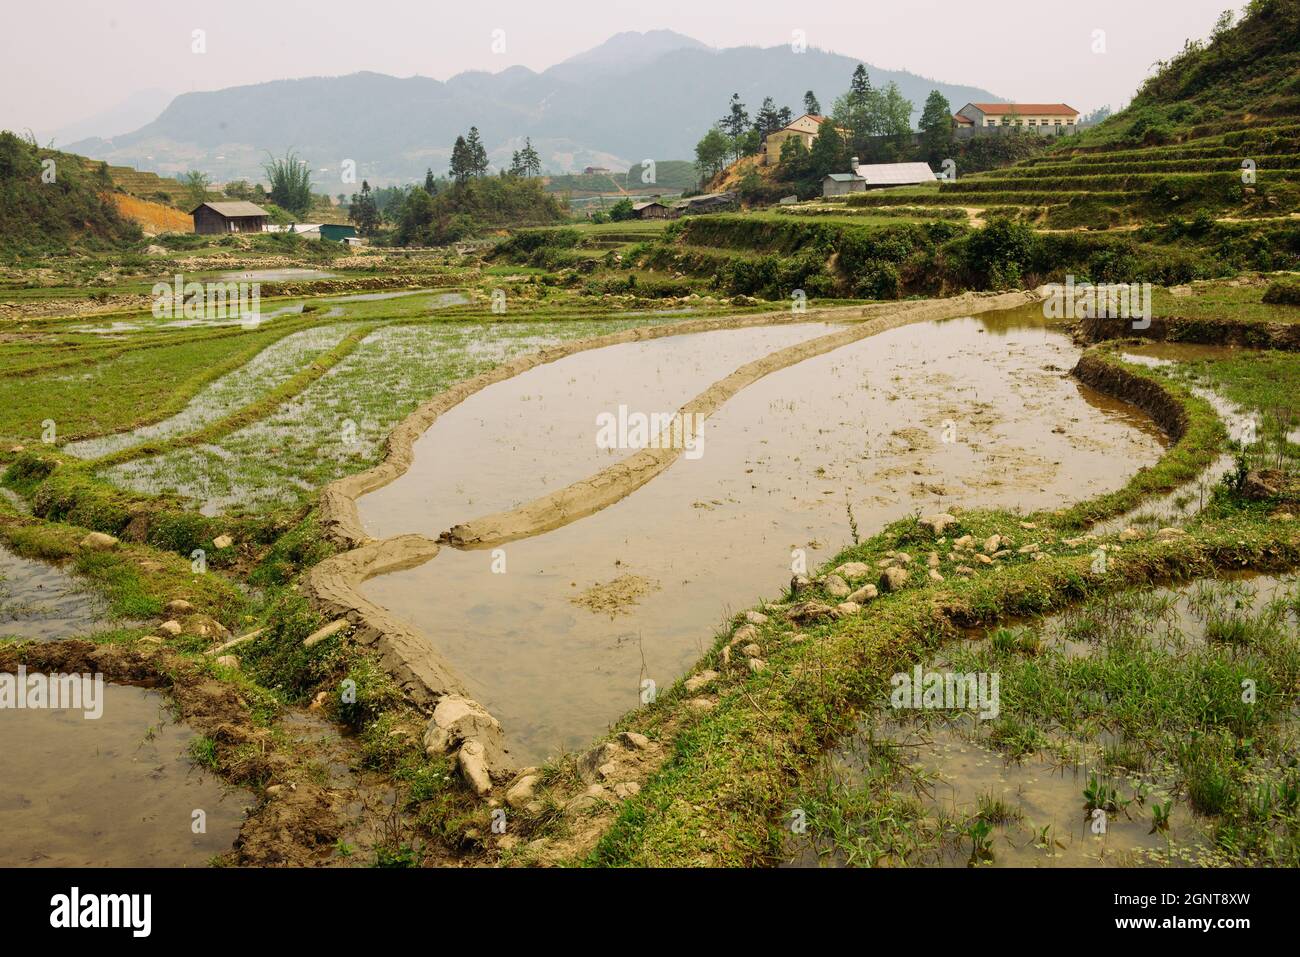 Terrasses de riz et collines à Sapa, Vietnam. Paysage rural vert vietnamien au printemps. Riz paddy de l'Asie du Sud-est Banque D'Images